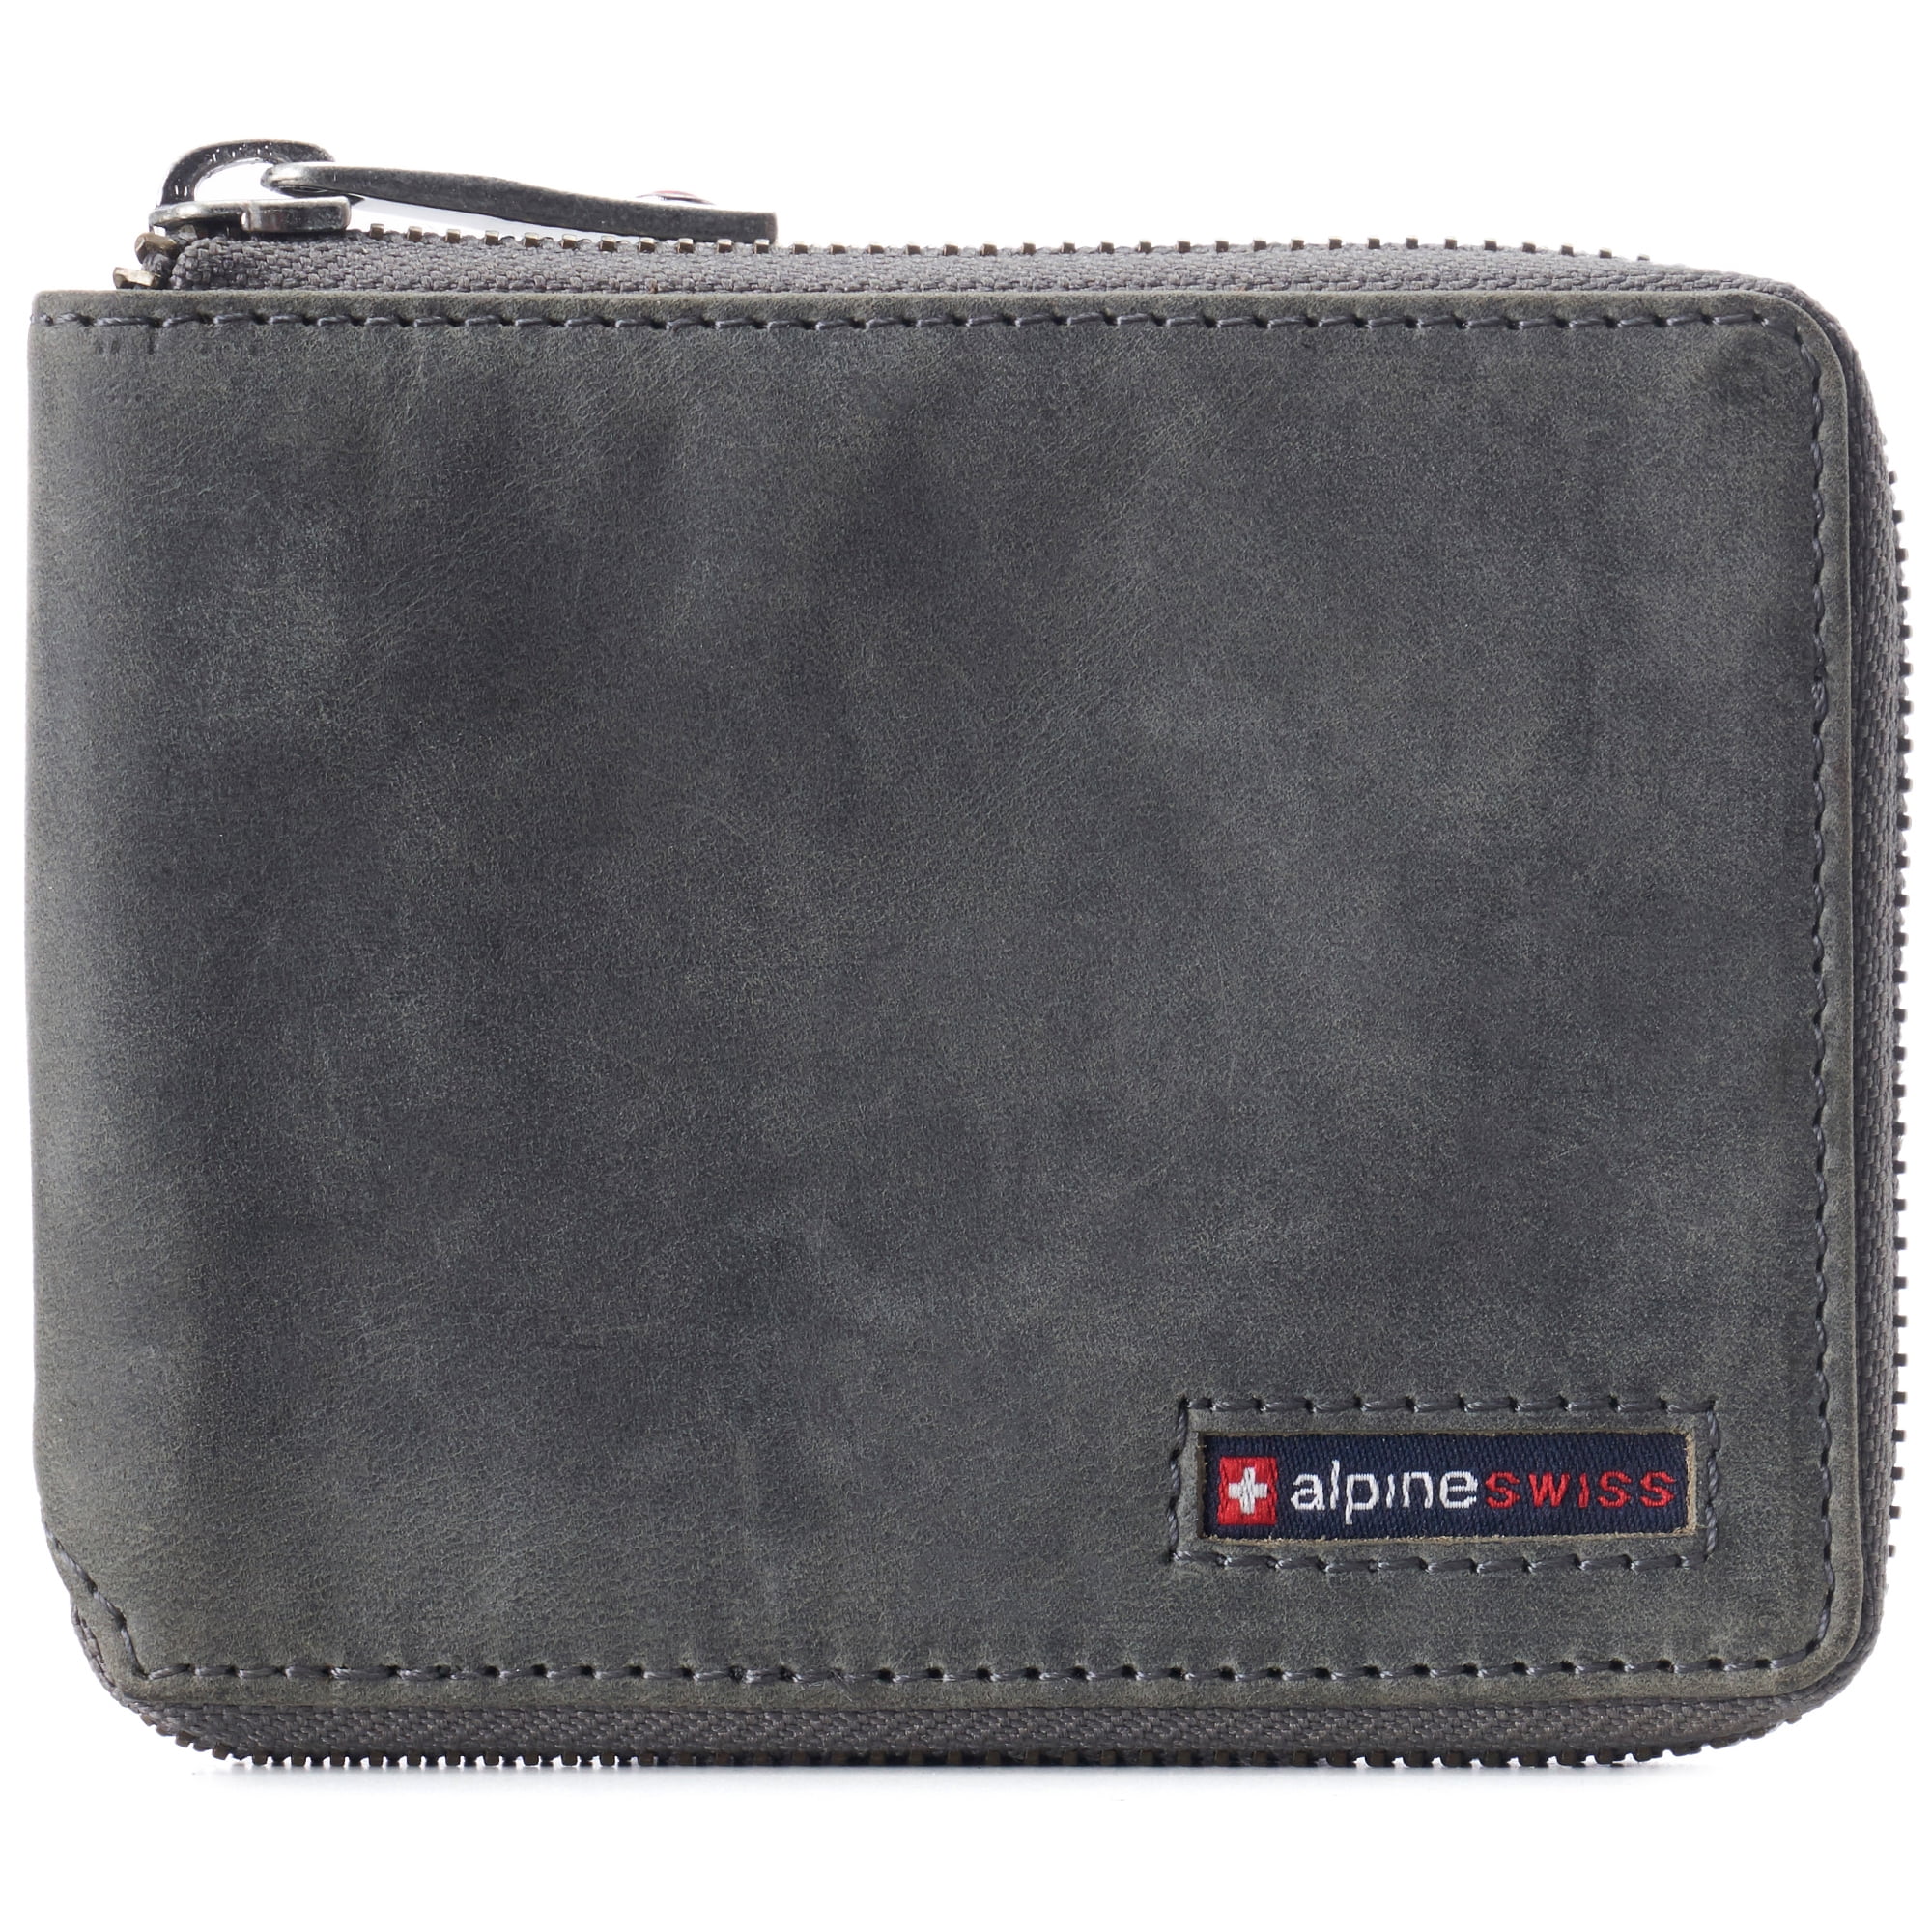 Alpine Swiss Unisex RFID Safe Zipper Wallet Genuine Leather Zip